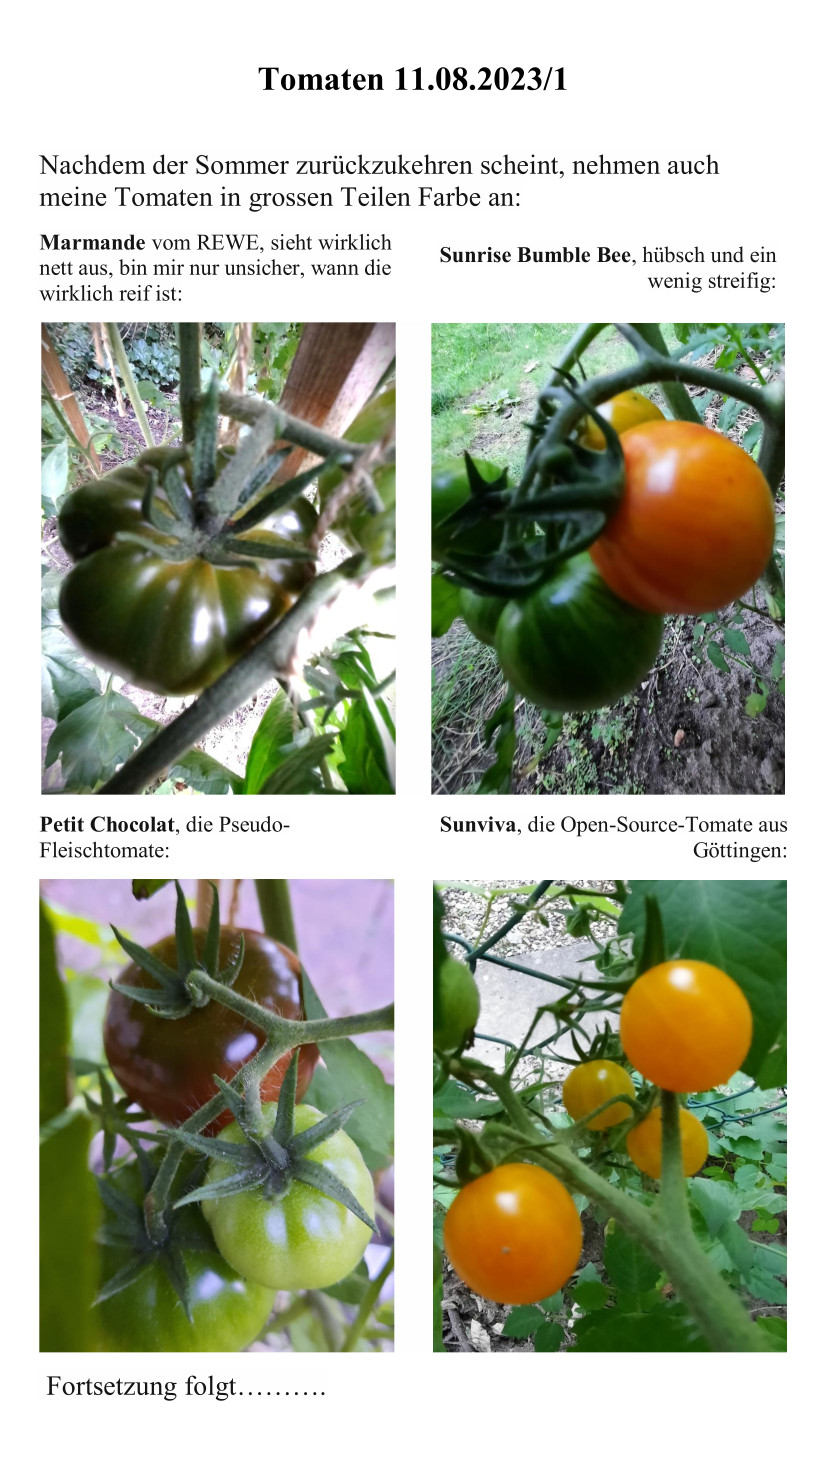 Tomaten 11.08.2023.1.jpg